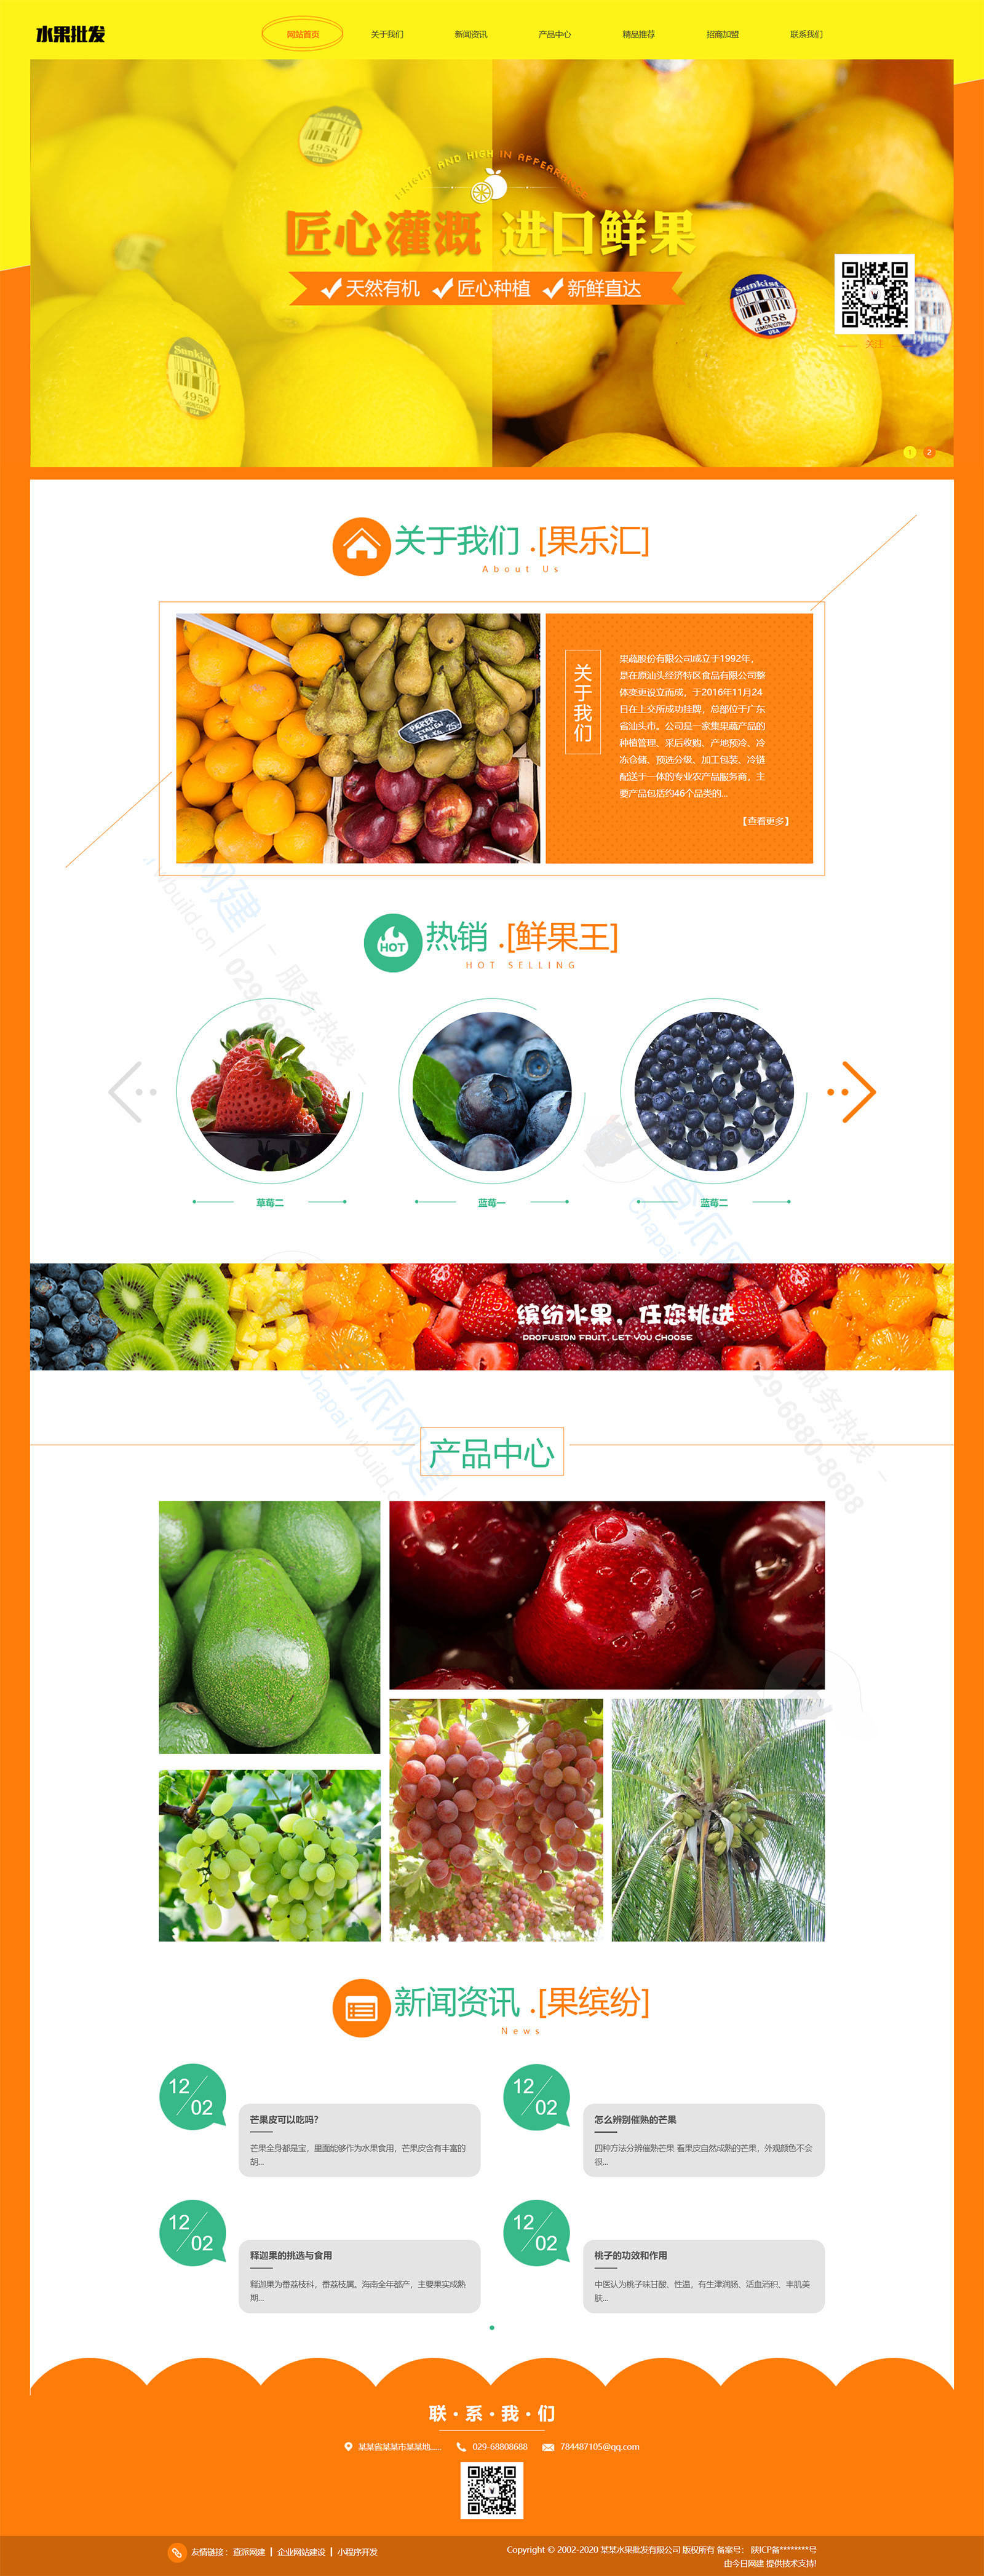 蔬菜水果批发类响应式企业网站模板(自适应手机端) 